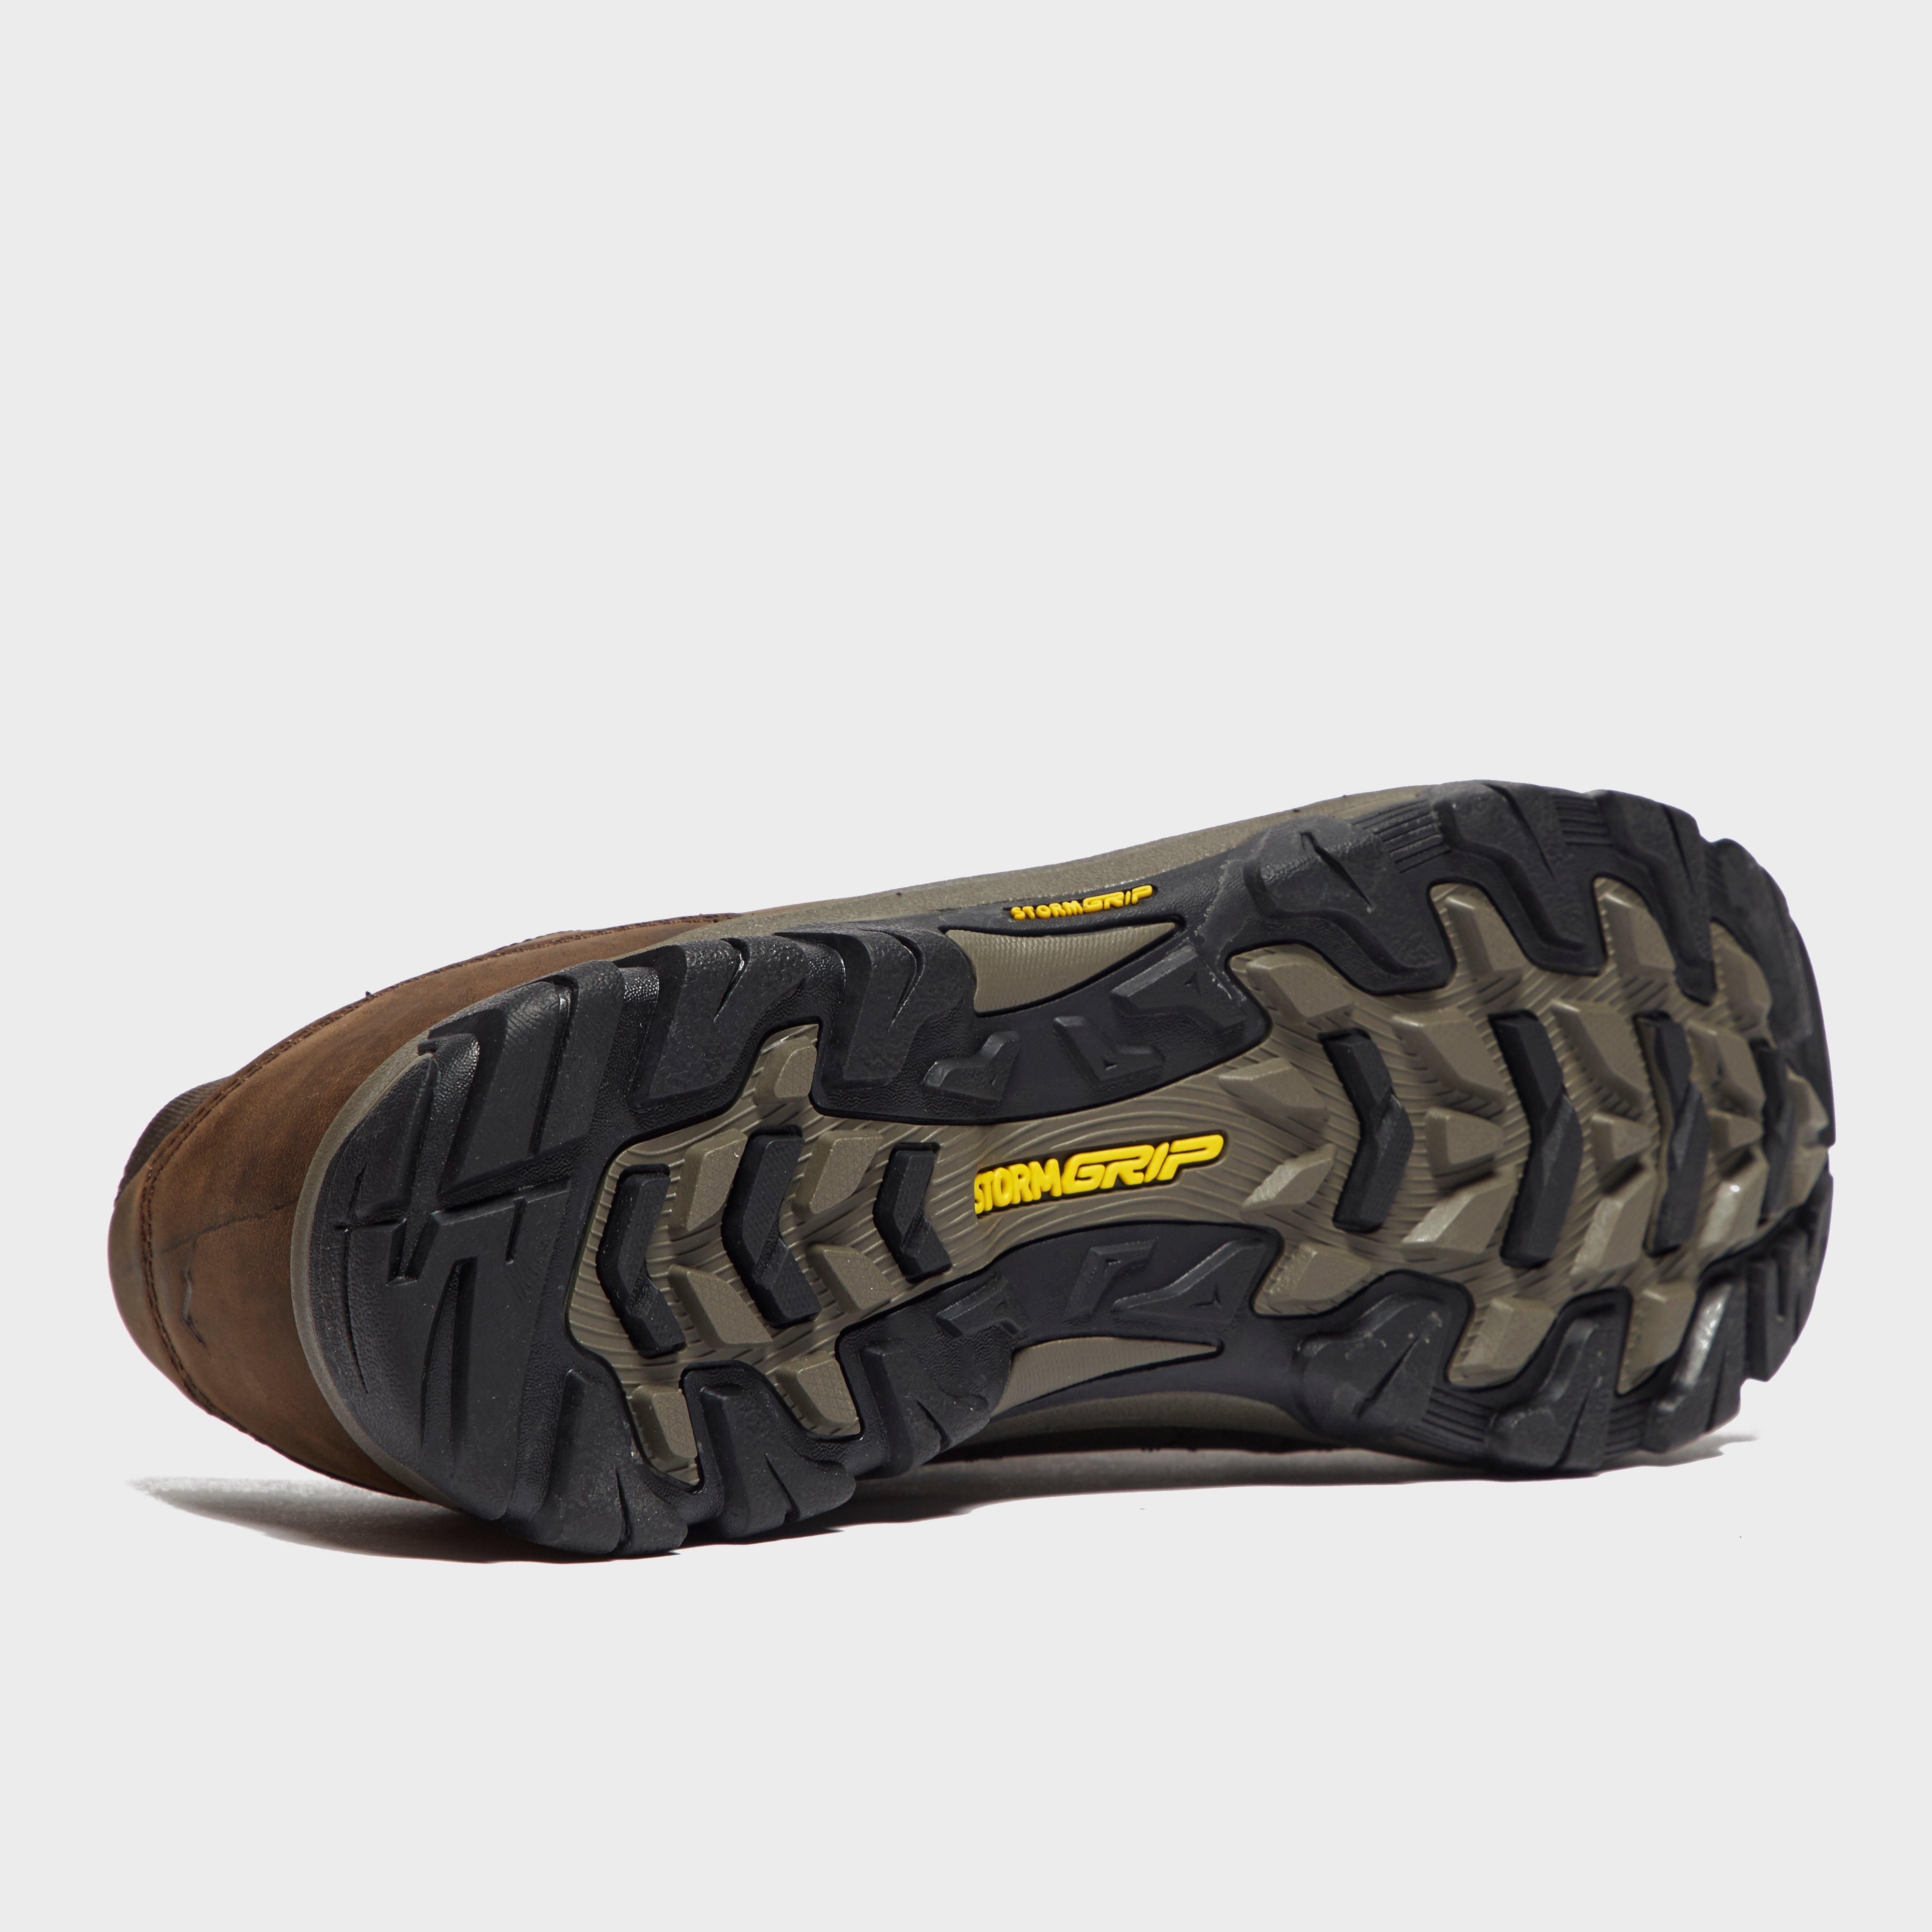 New Peter Storm Men’s Lindale Waterproof Walking Shoes